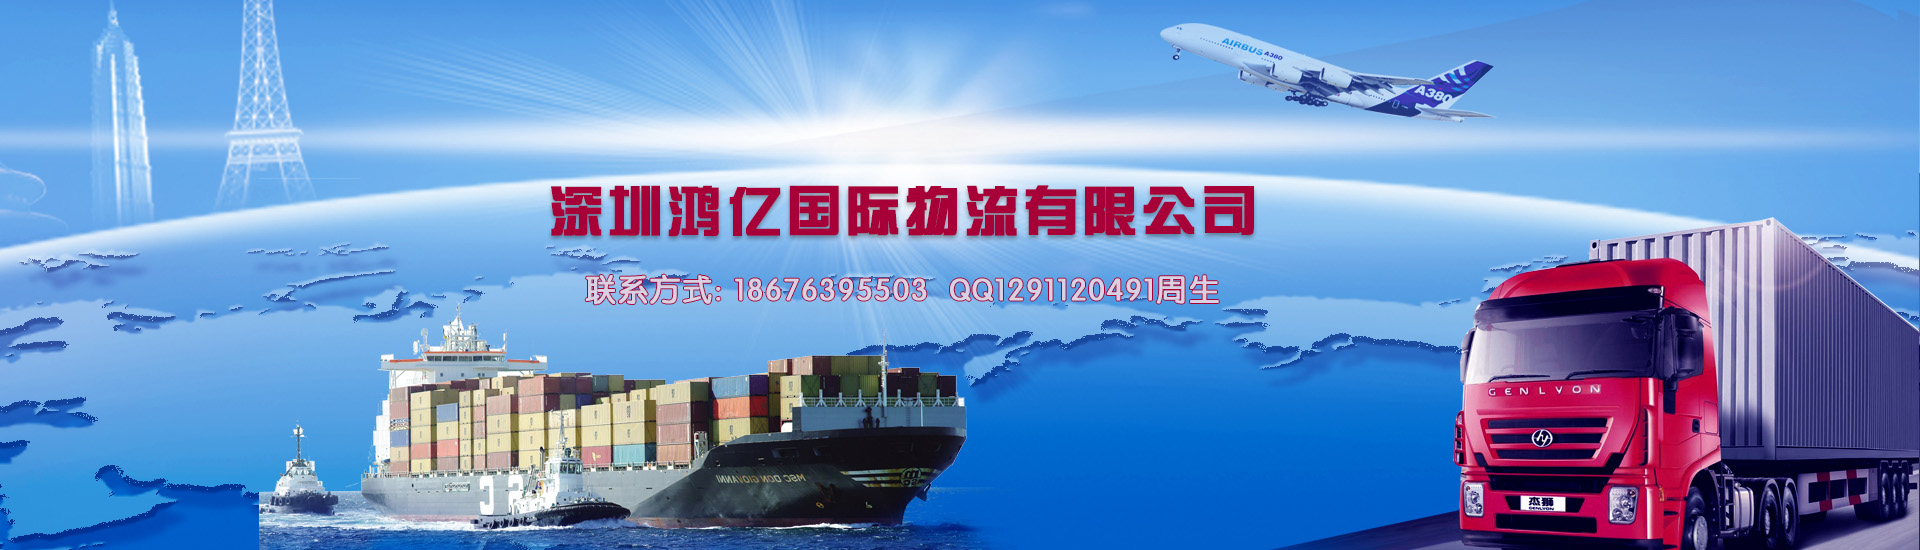 北京海运空运到美国亚马逊物流货代 